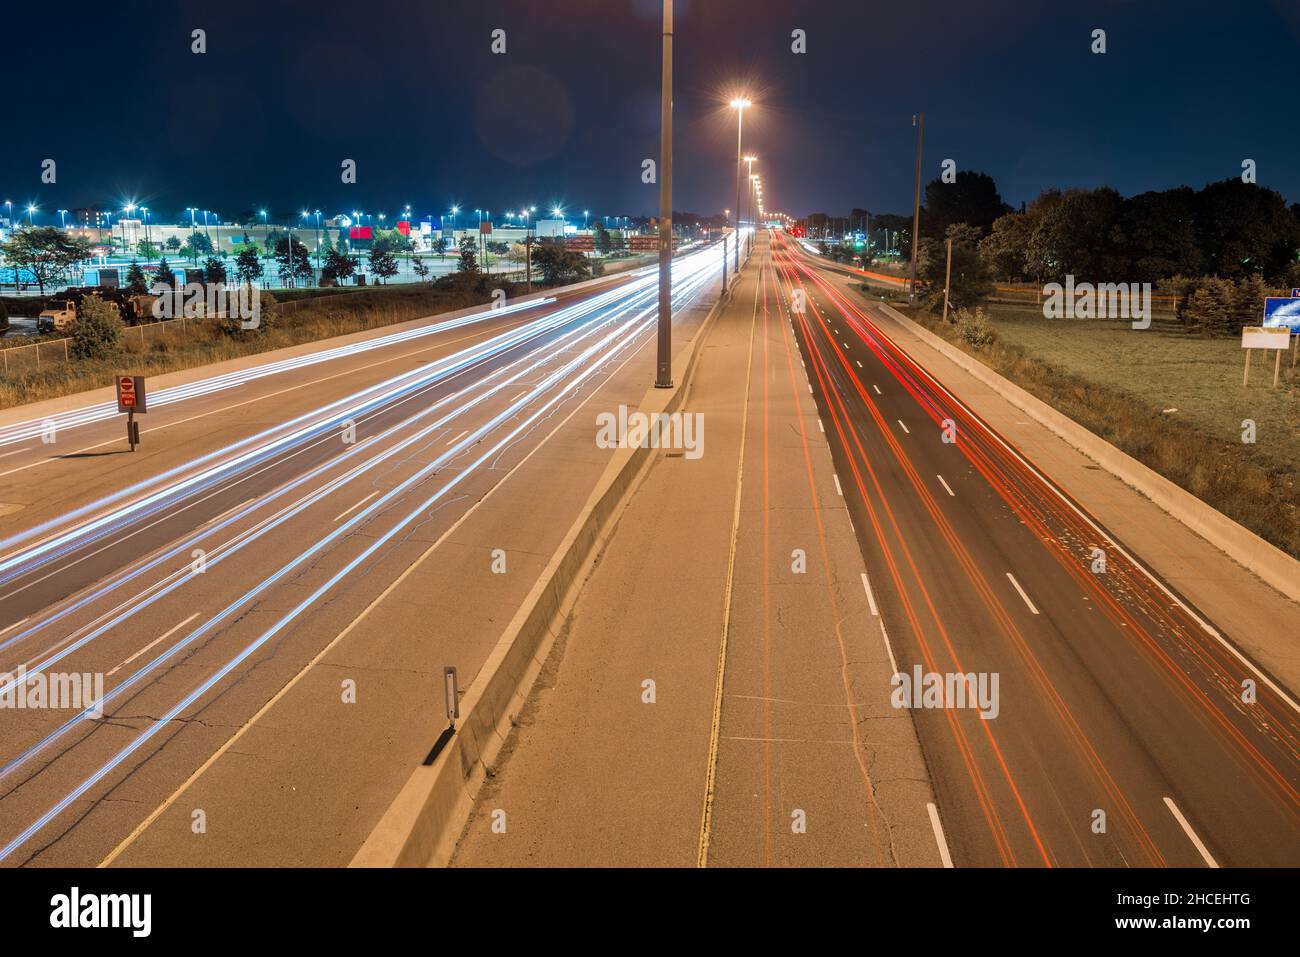 Nachtsicht von einer Autobahn mit leichten Wegen, die von vorbeifahrenden Fahrzeugen verlassen werden Stockfoto